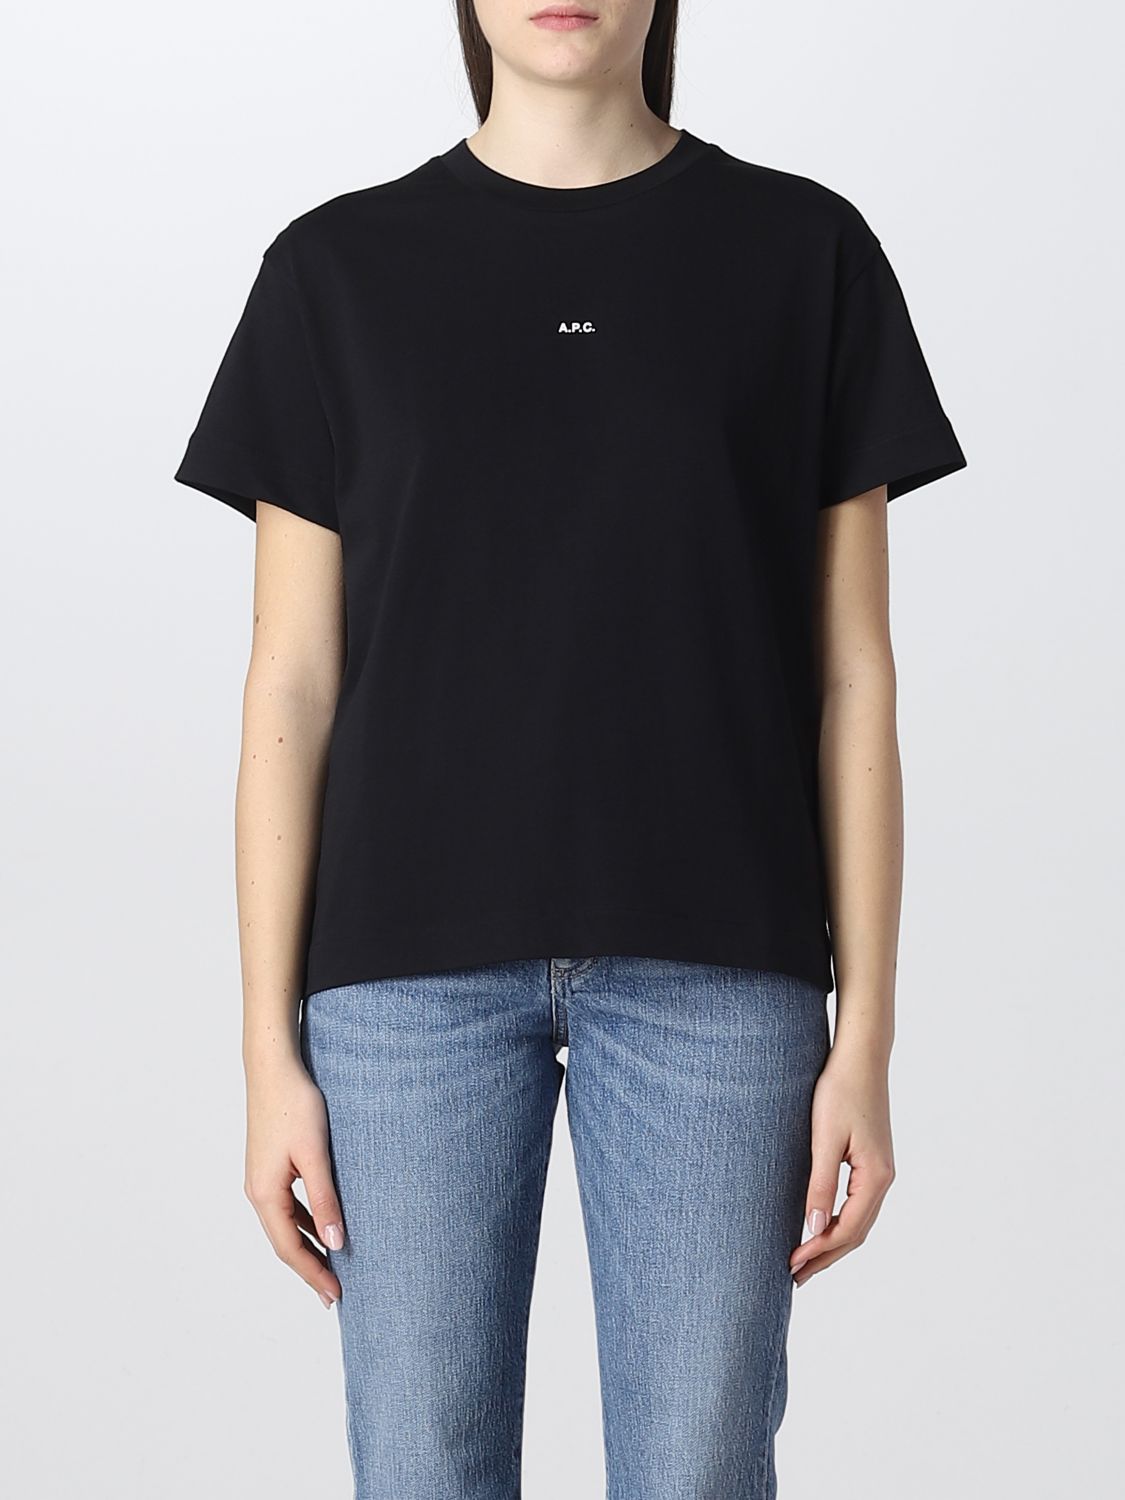 A.P.C.: t-shirt for woman - Black | A.p.c. t-shirt COEIOF26937 online ...